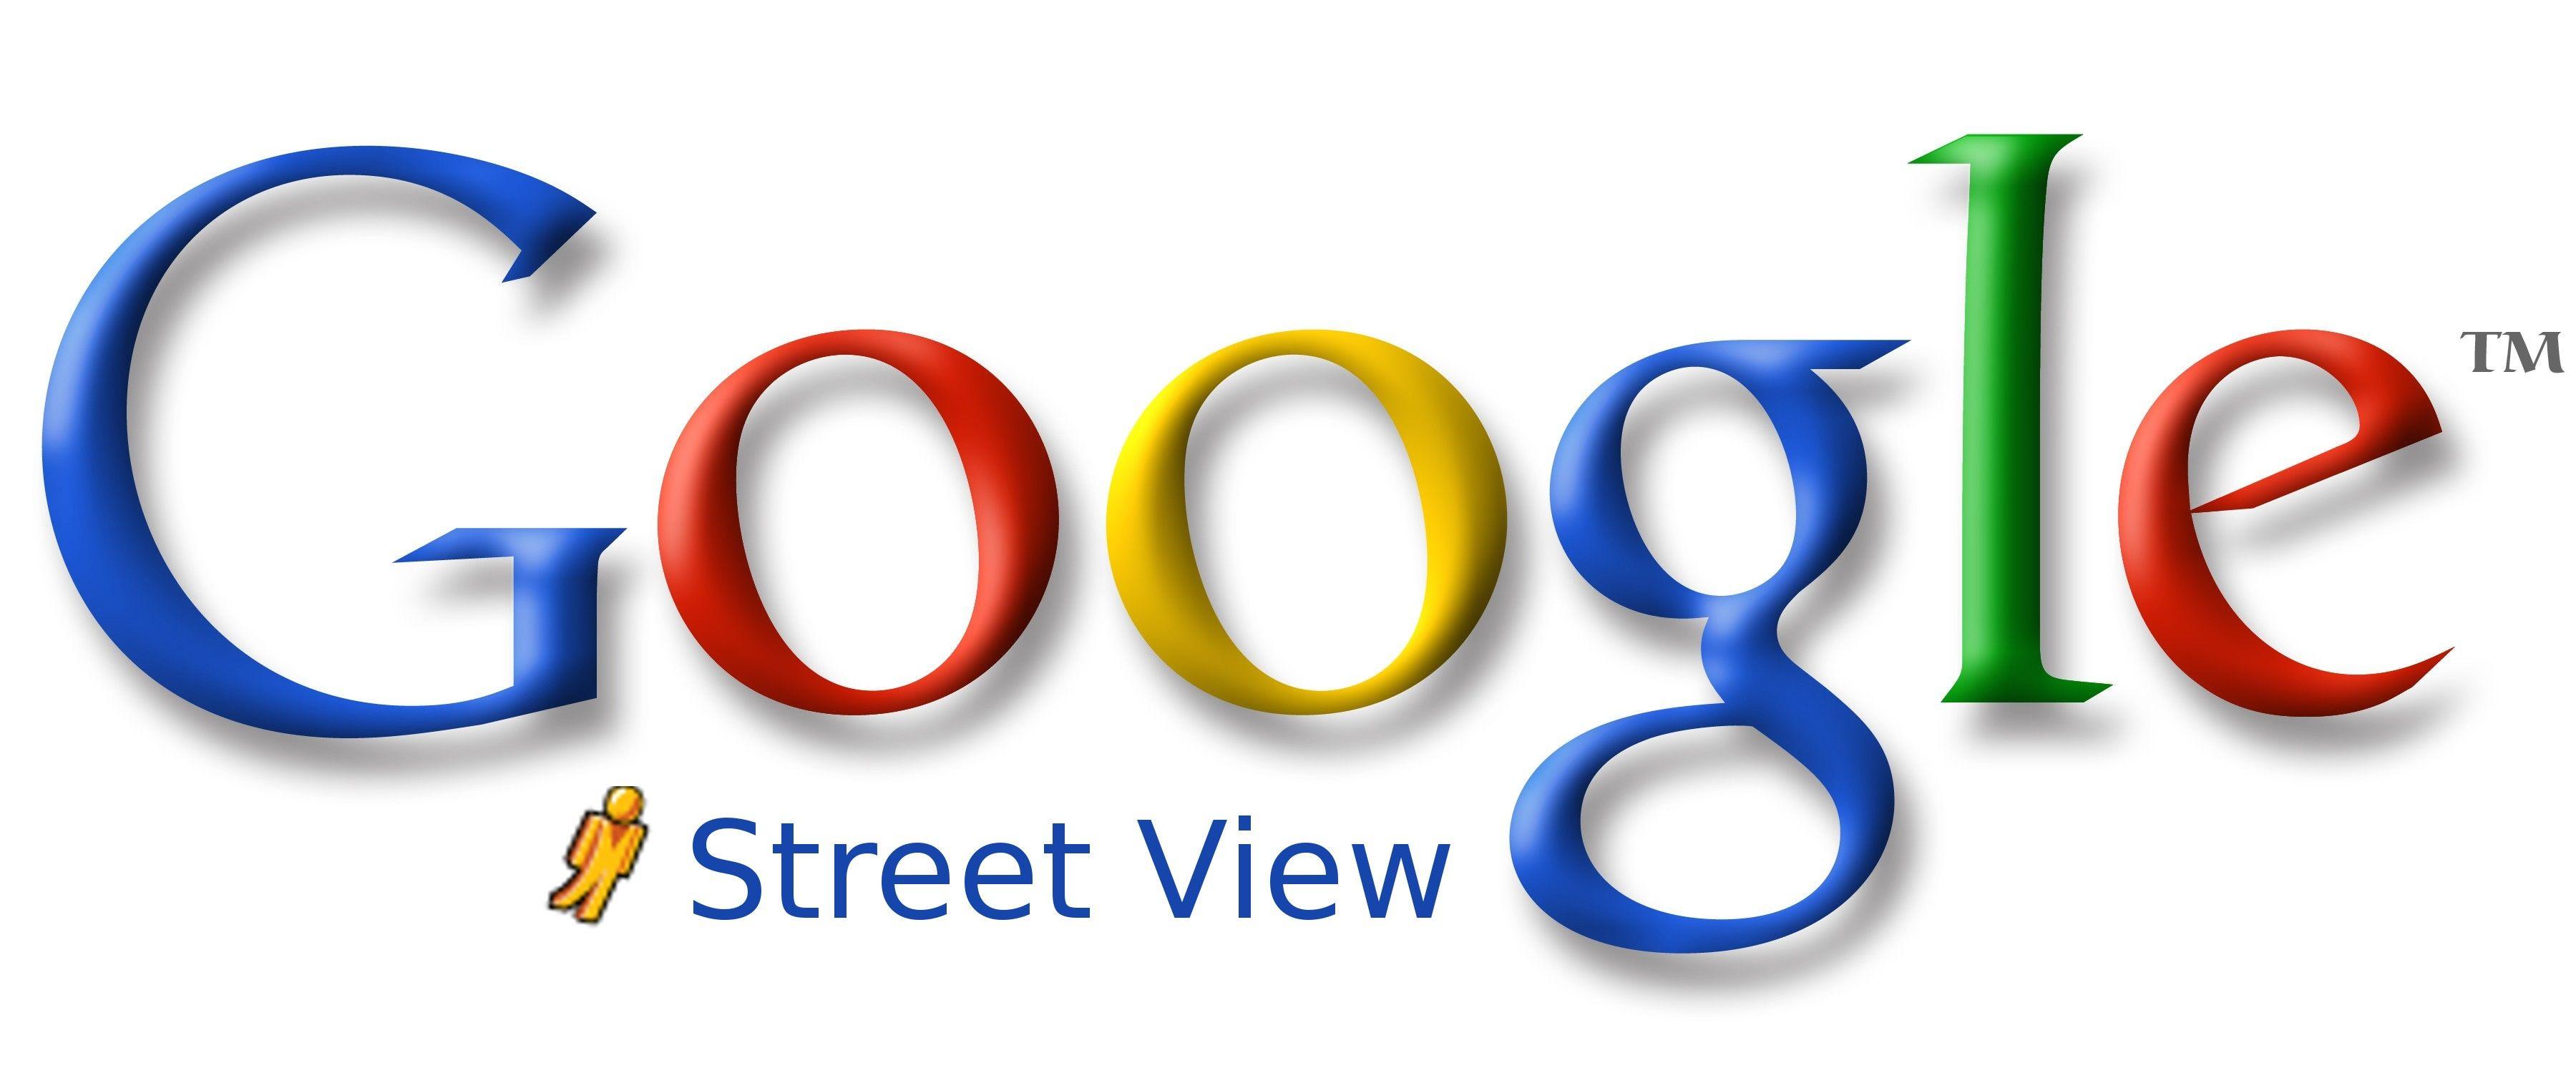 Google Street View Logo - Google Street View Logo. Wine Cellar Plus